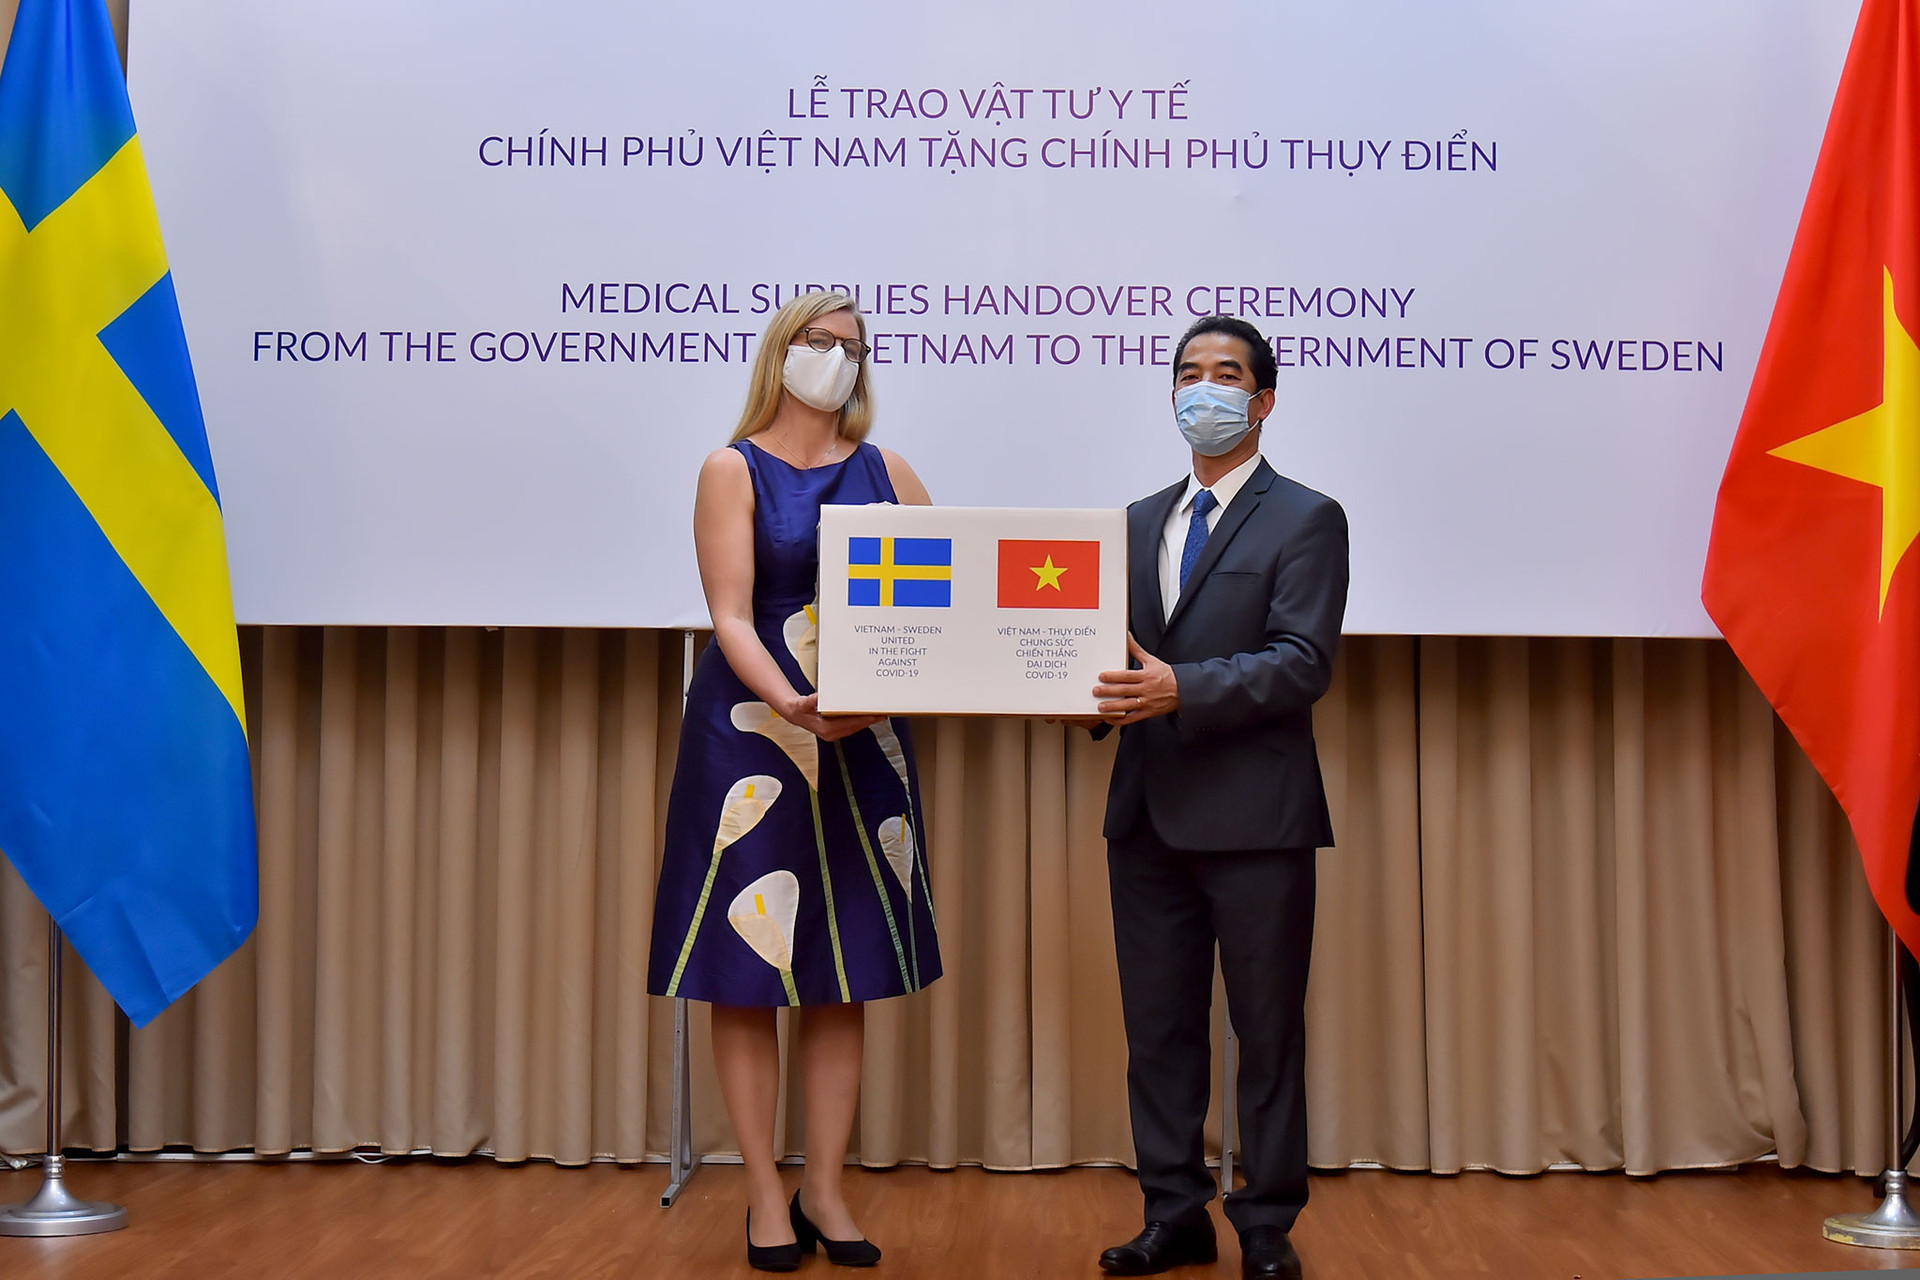 Đại sứ Thụy Điển tại Việt Nam: “Khi khó khăn mới biết ai là bạn”